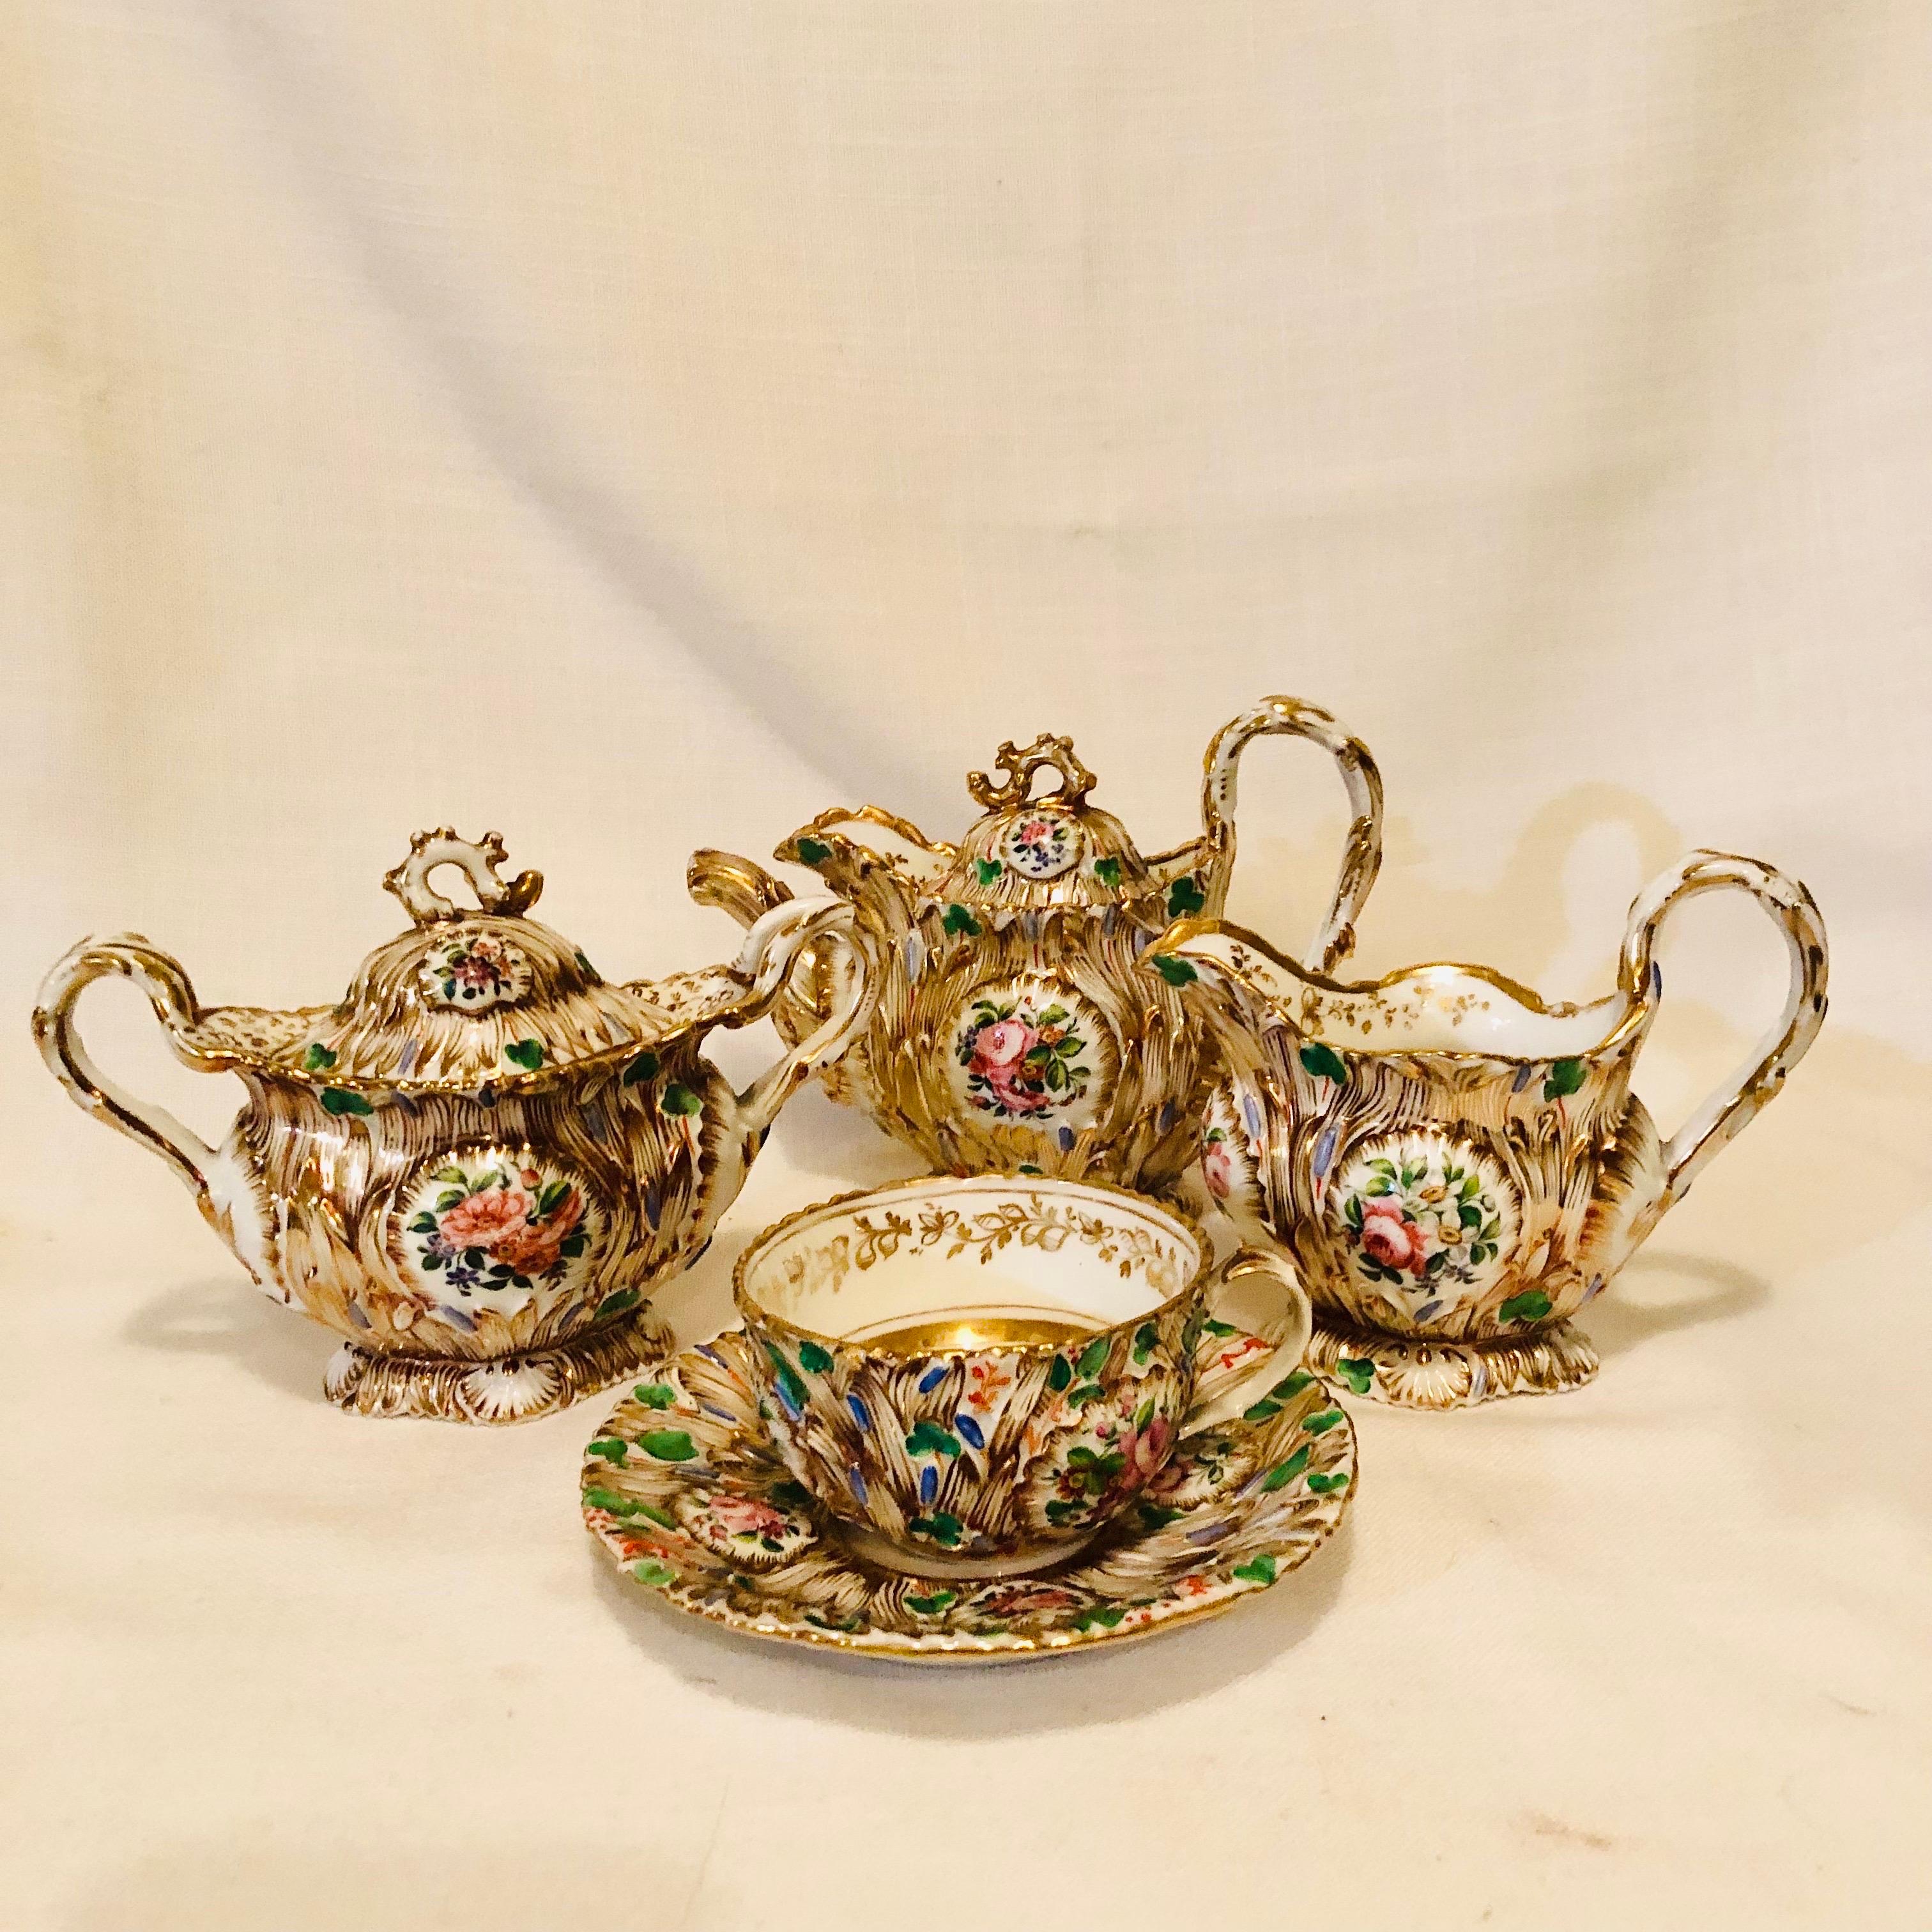 Jacob Petit Paris Porcelain Tea Set with Gilt and Colorful Rococo Decoration For Sale 2